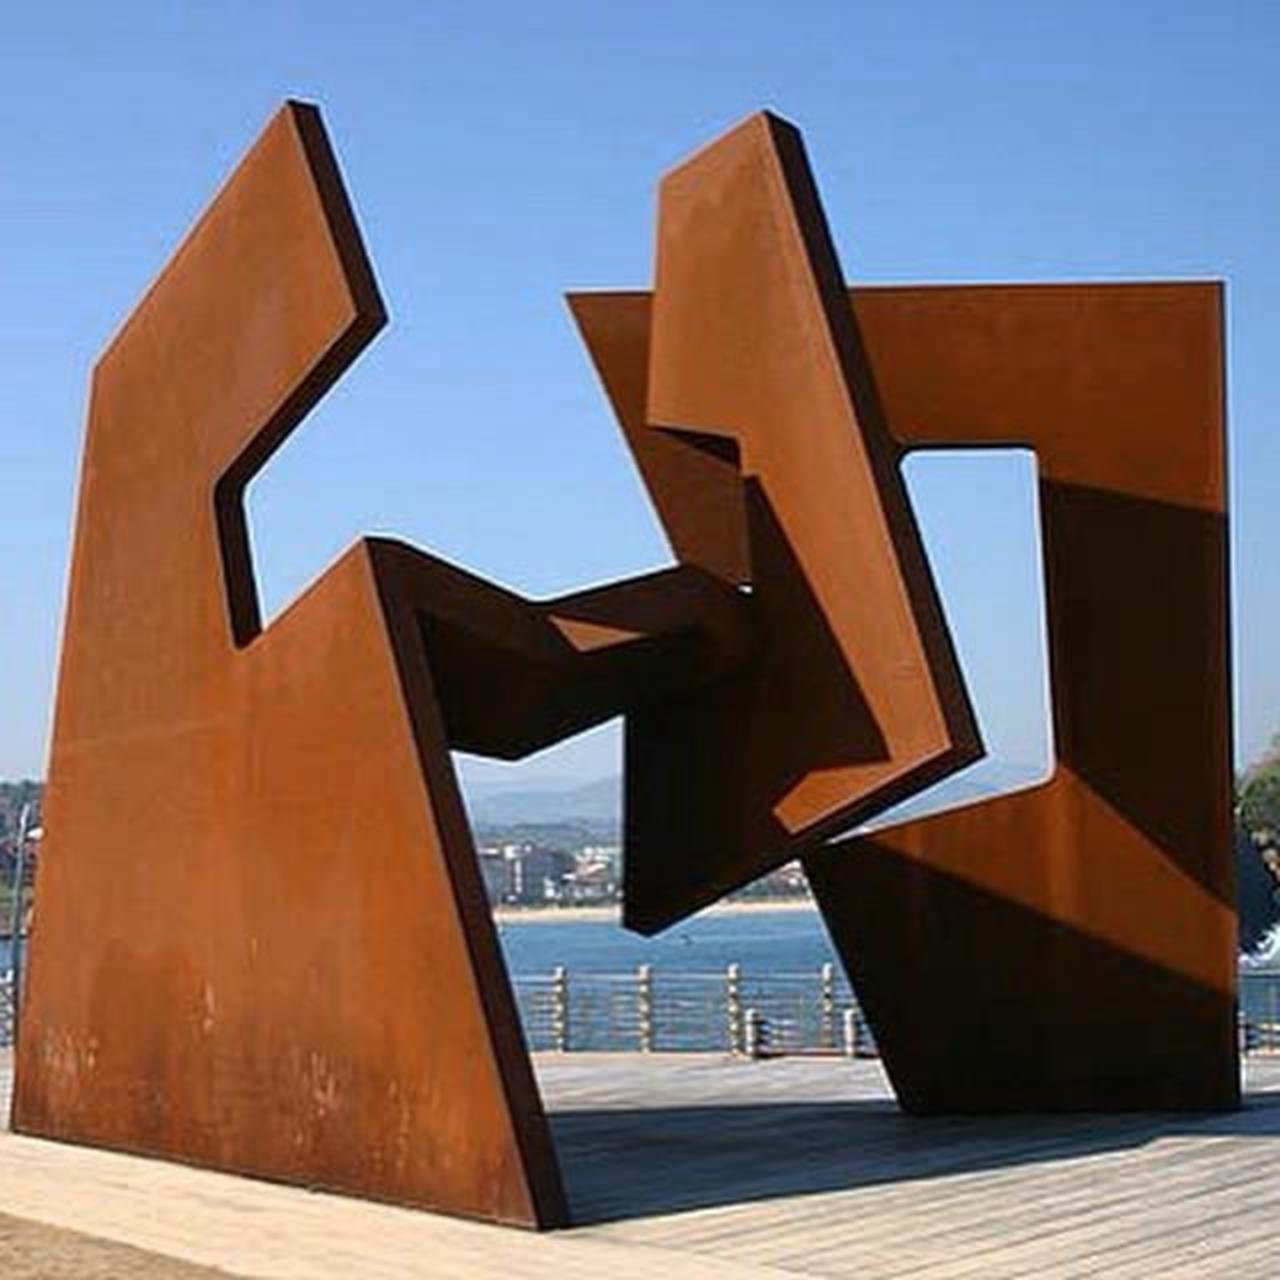 San Sebastian, Oteixa. #art #sculpture #outdoor #publicart http://t.co/RGdqu8FsIg